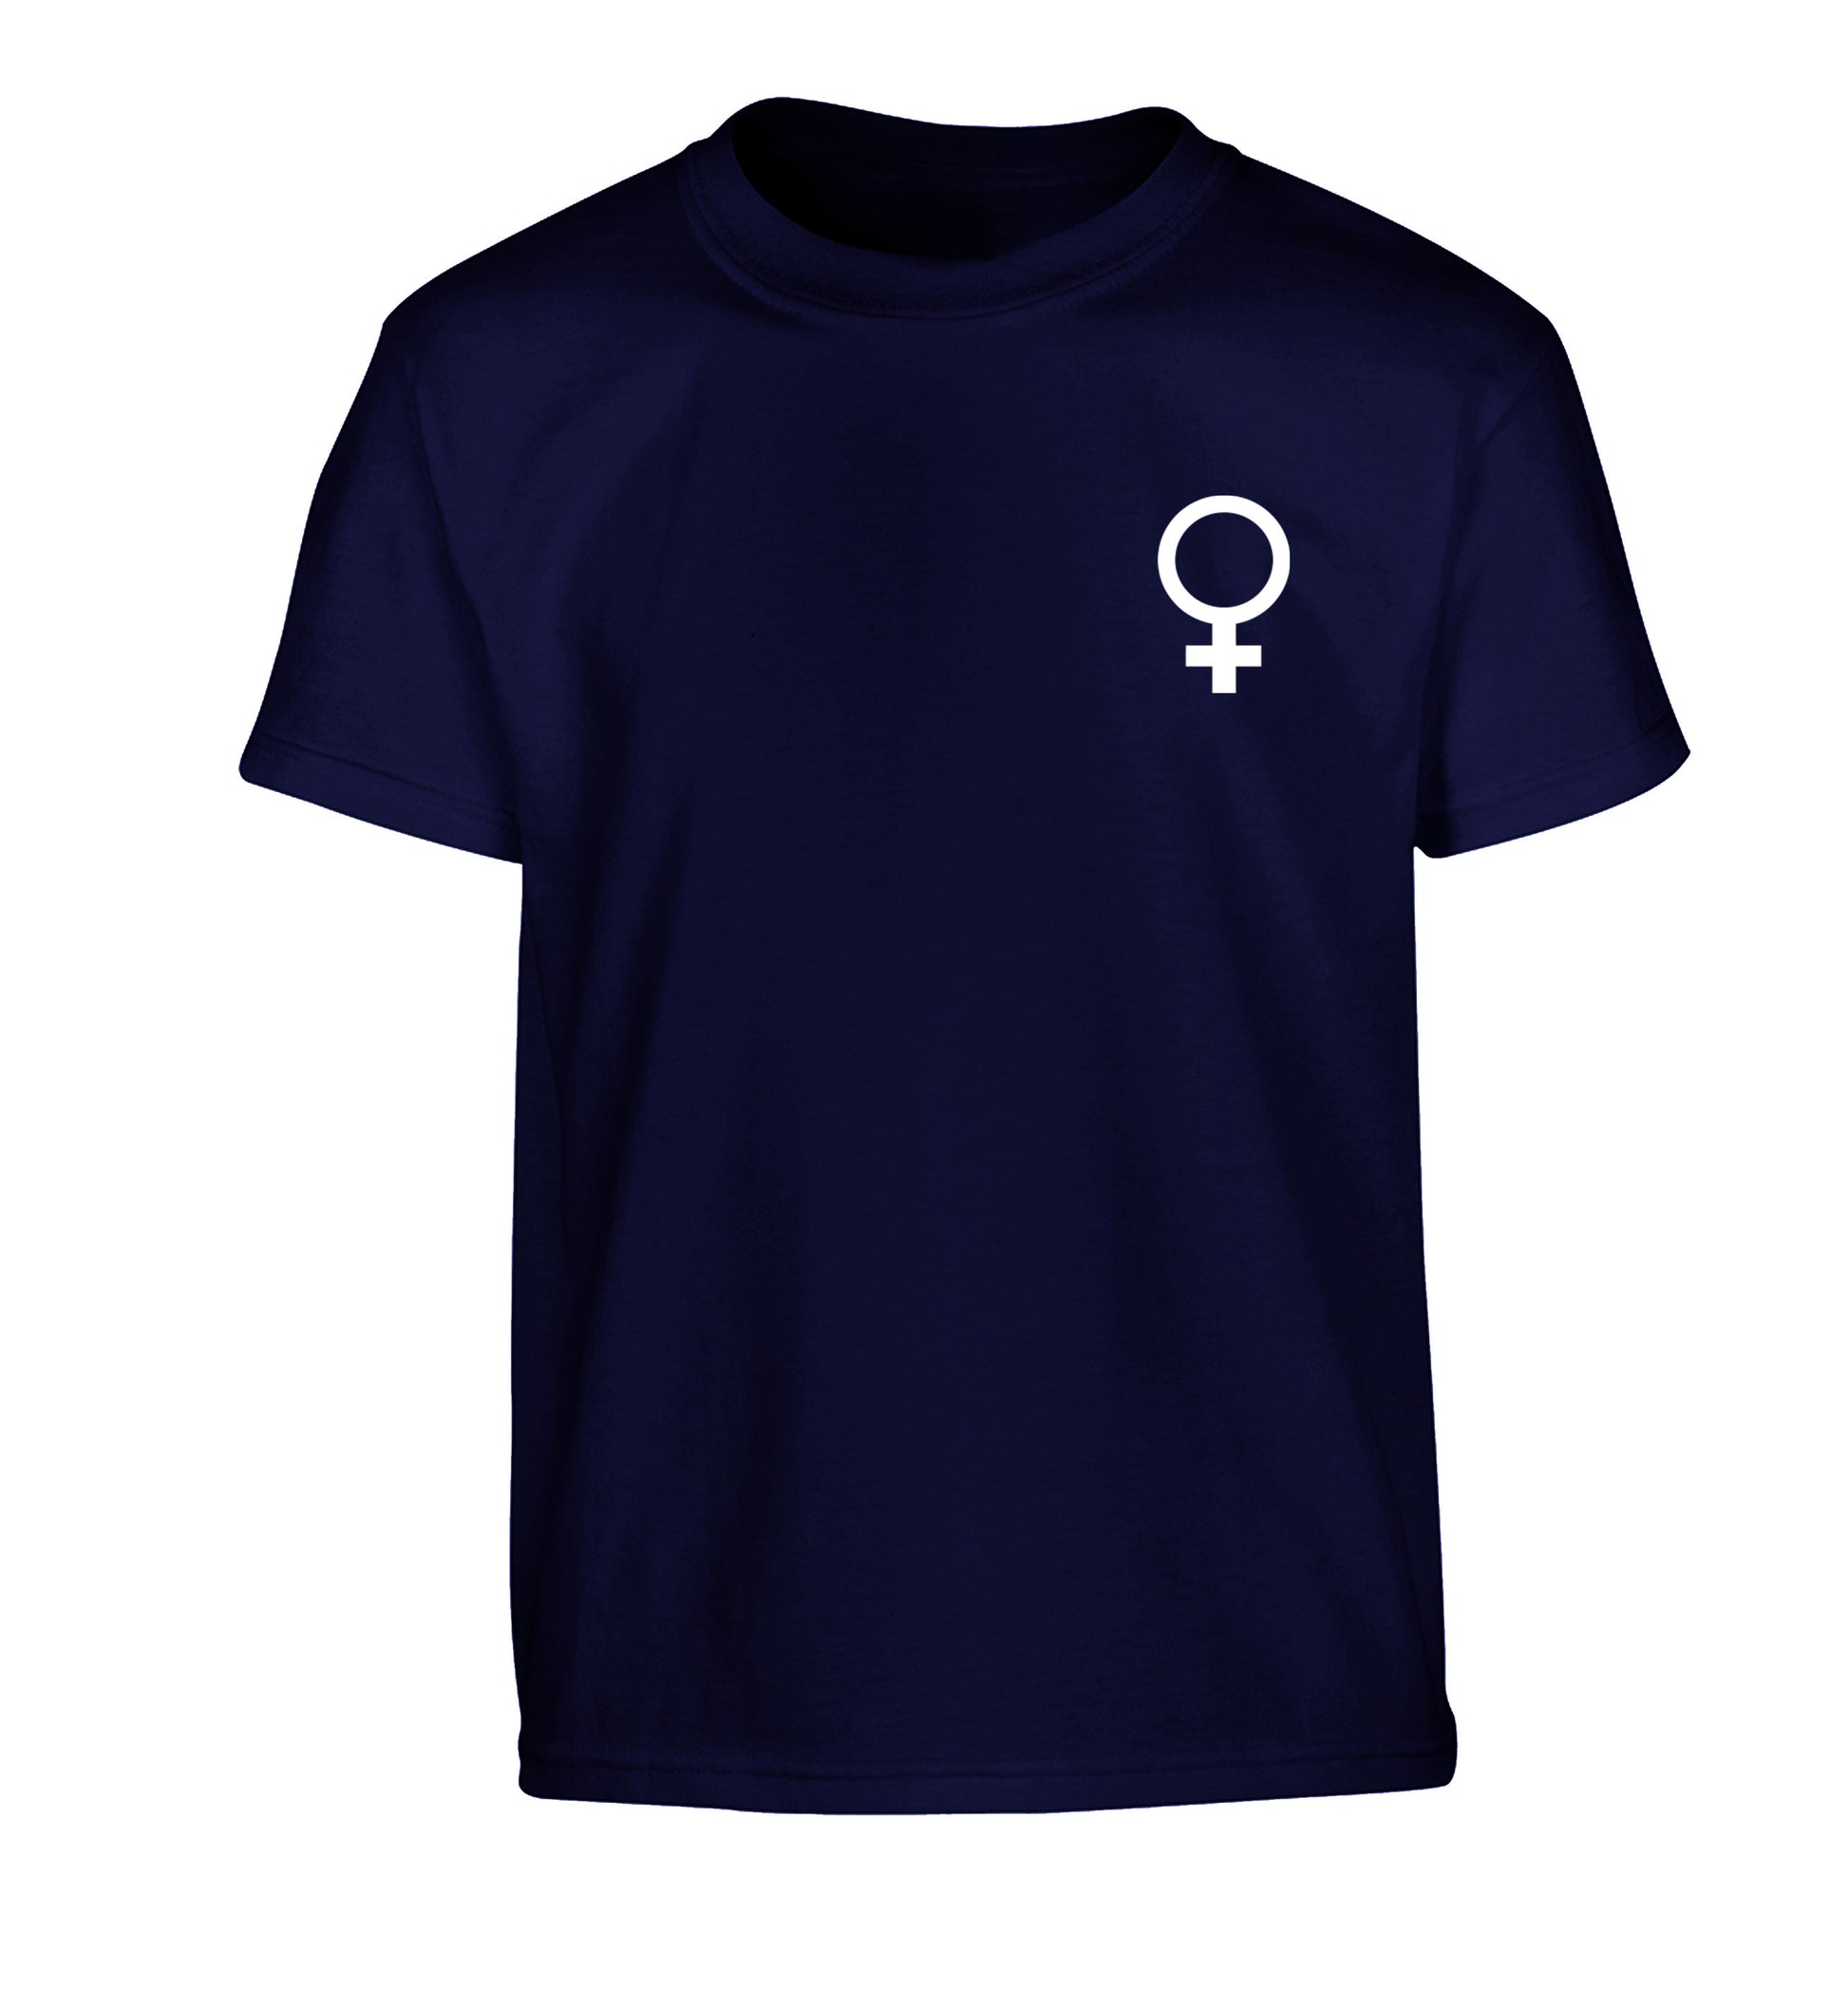 Female pocket symbol Children's navy Tshirt 12-14 Years